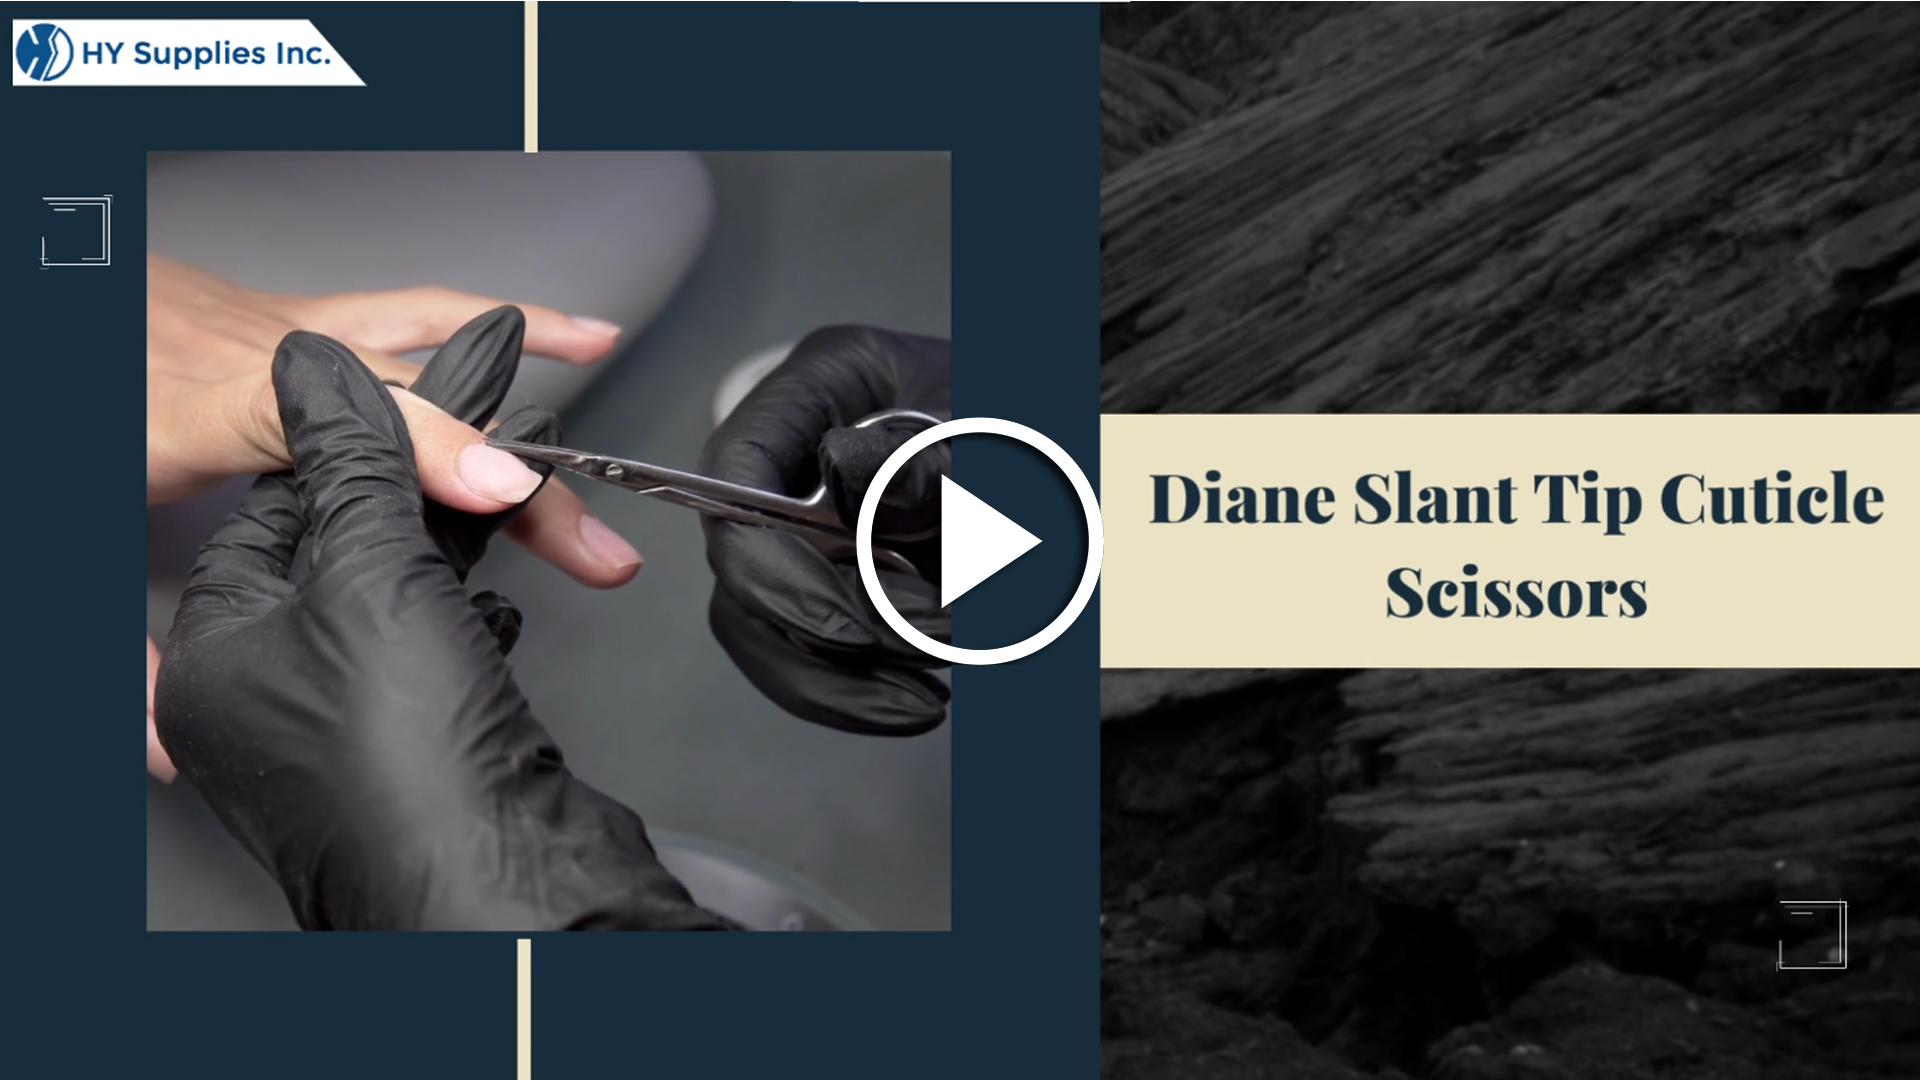 Diane Slant Tip Cuticle Scissors